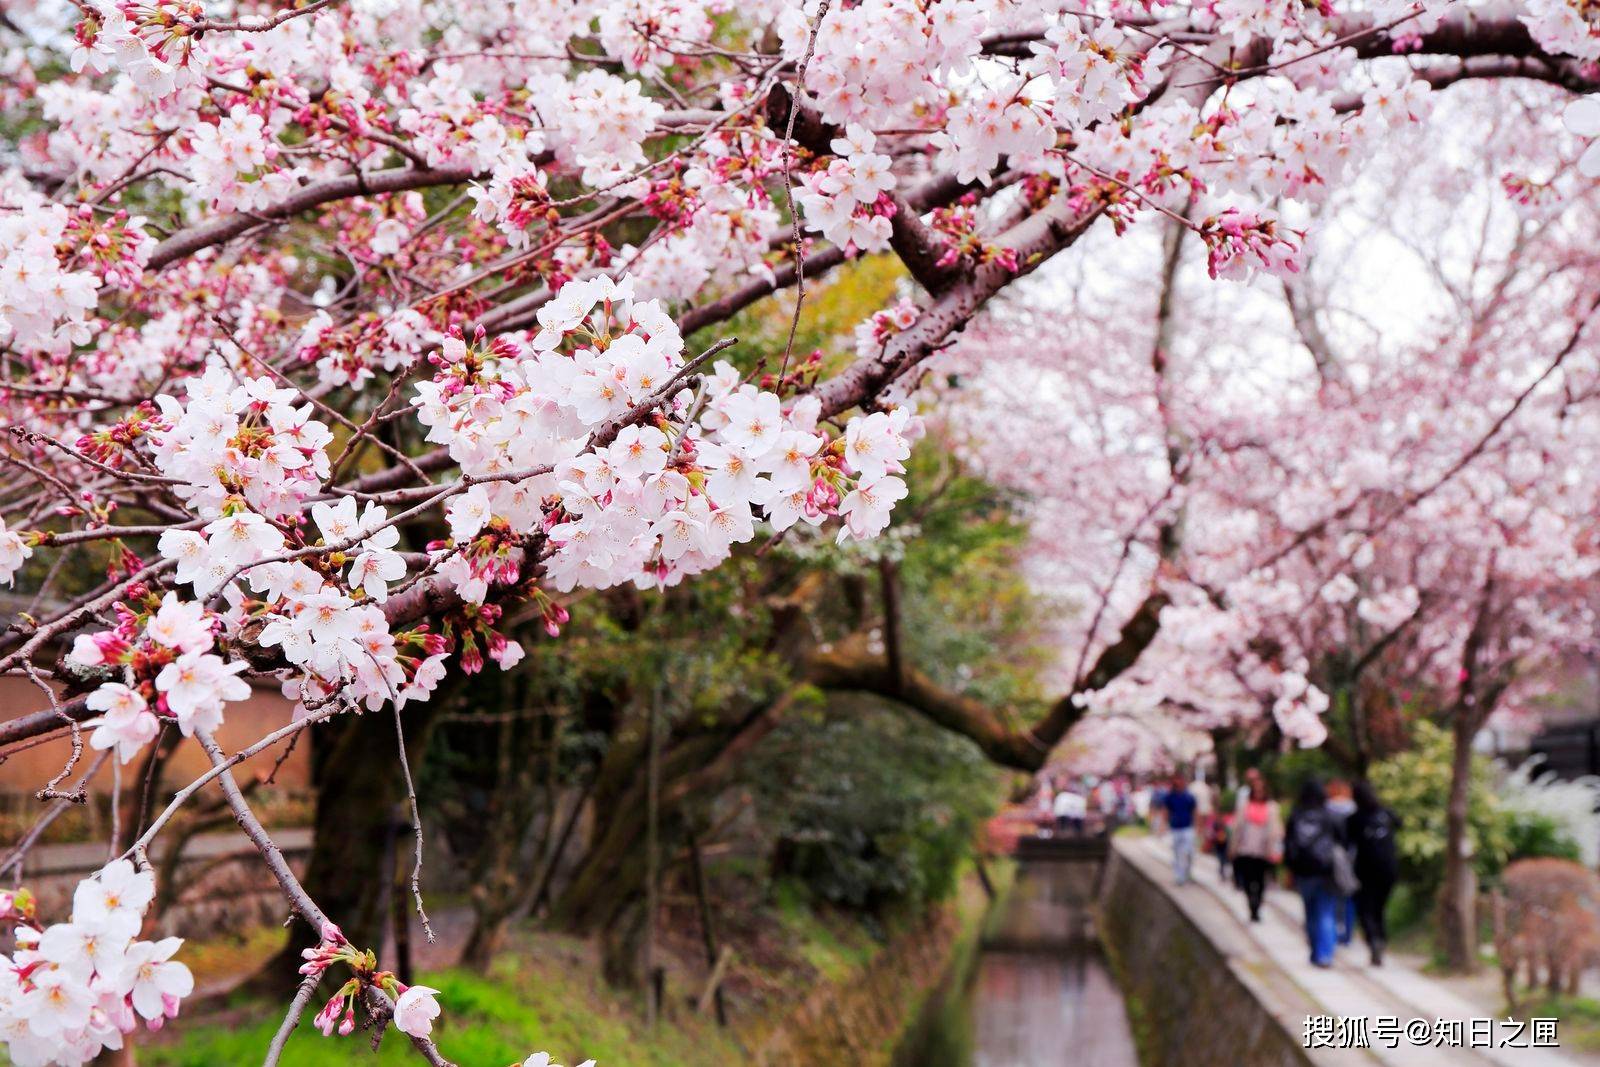 微笑和樱花一起盛开！能在春天的京都创造出粉红色回忆的美景！